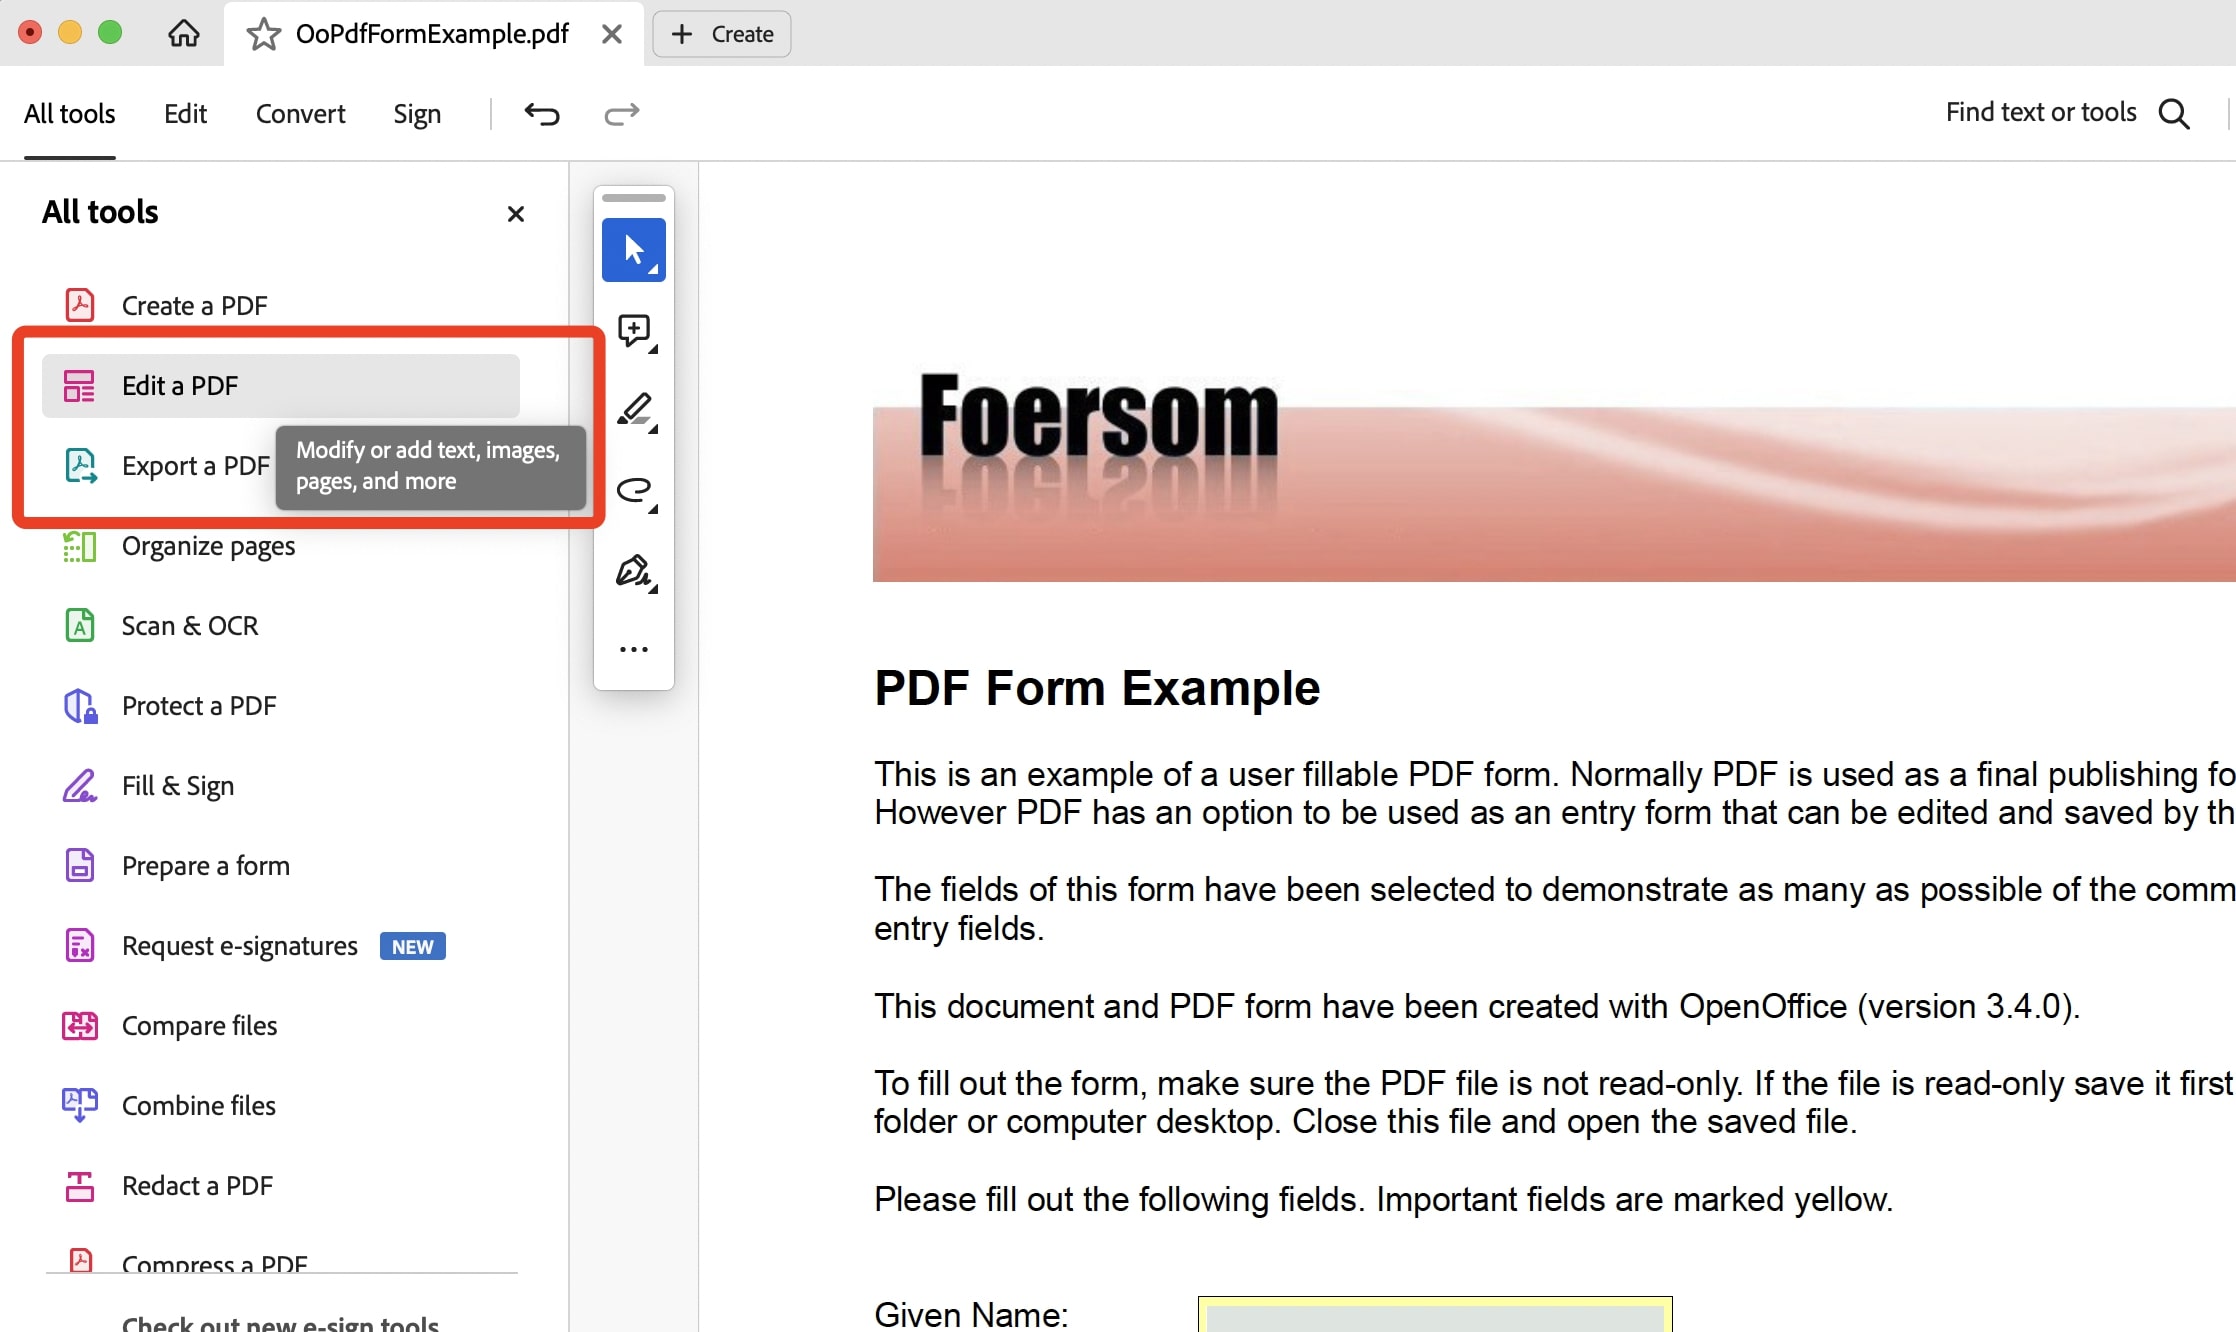 Select Edit a PDF Under Toolbar